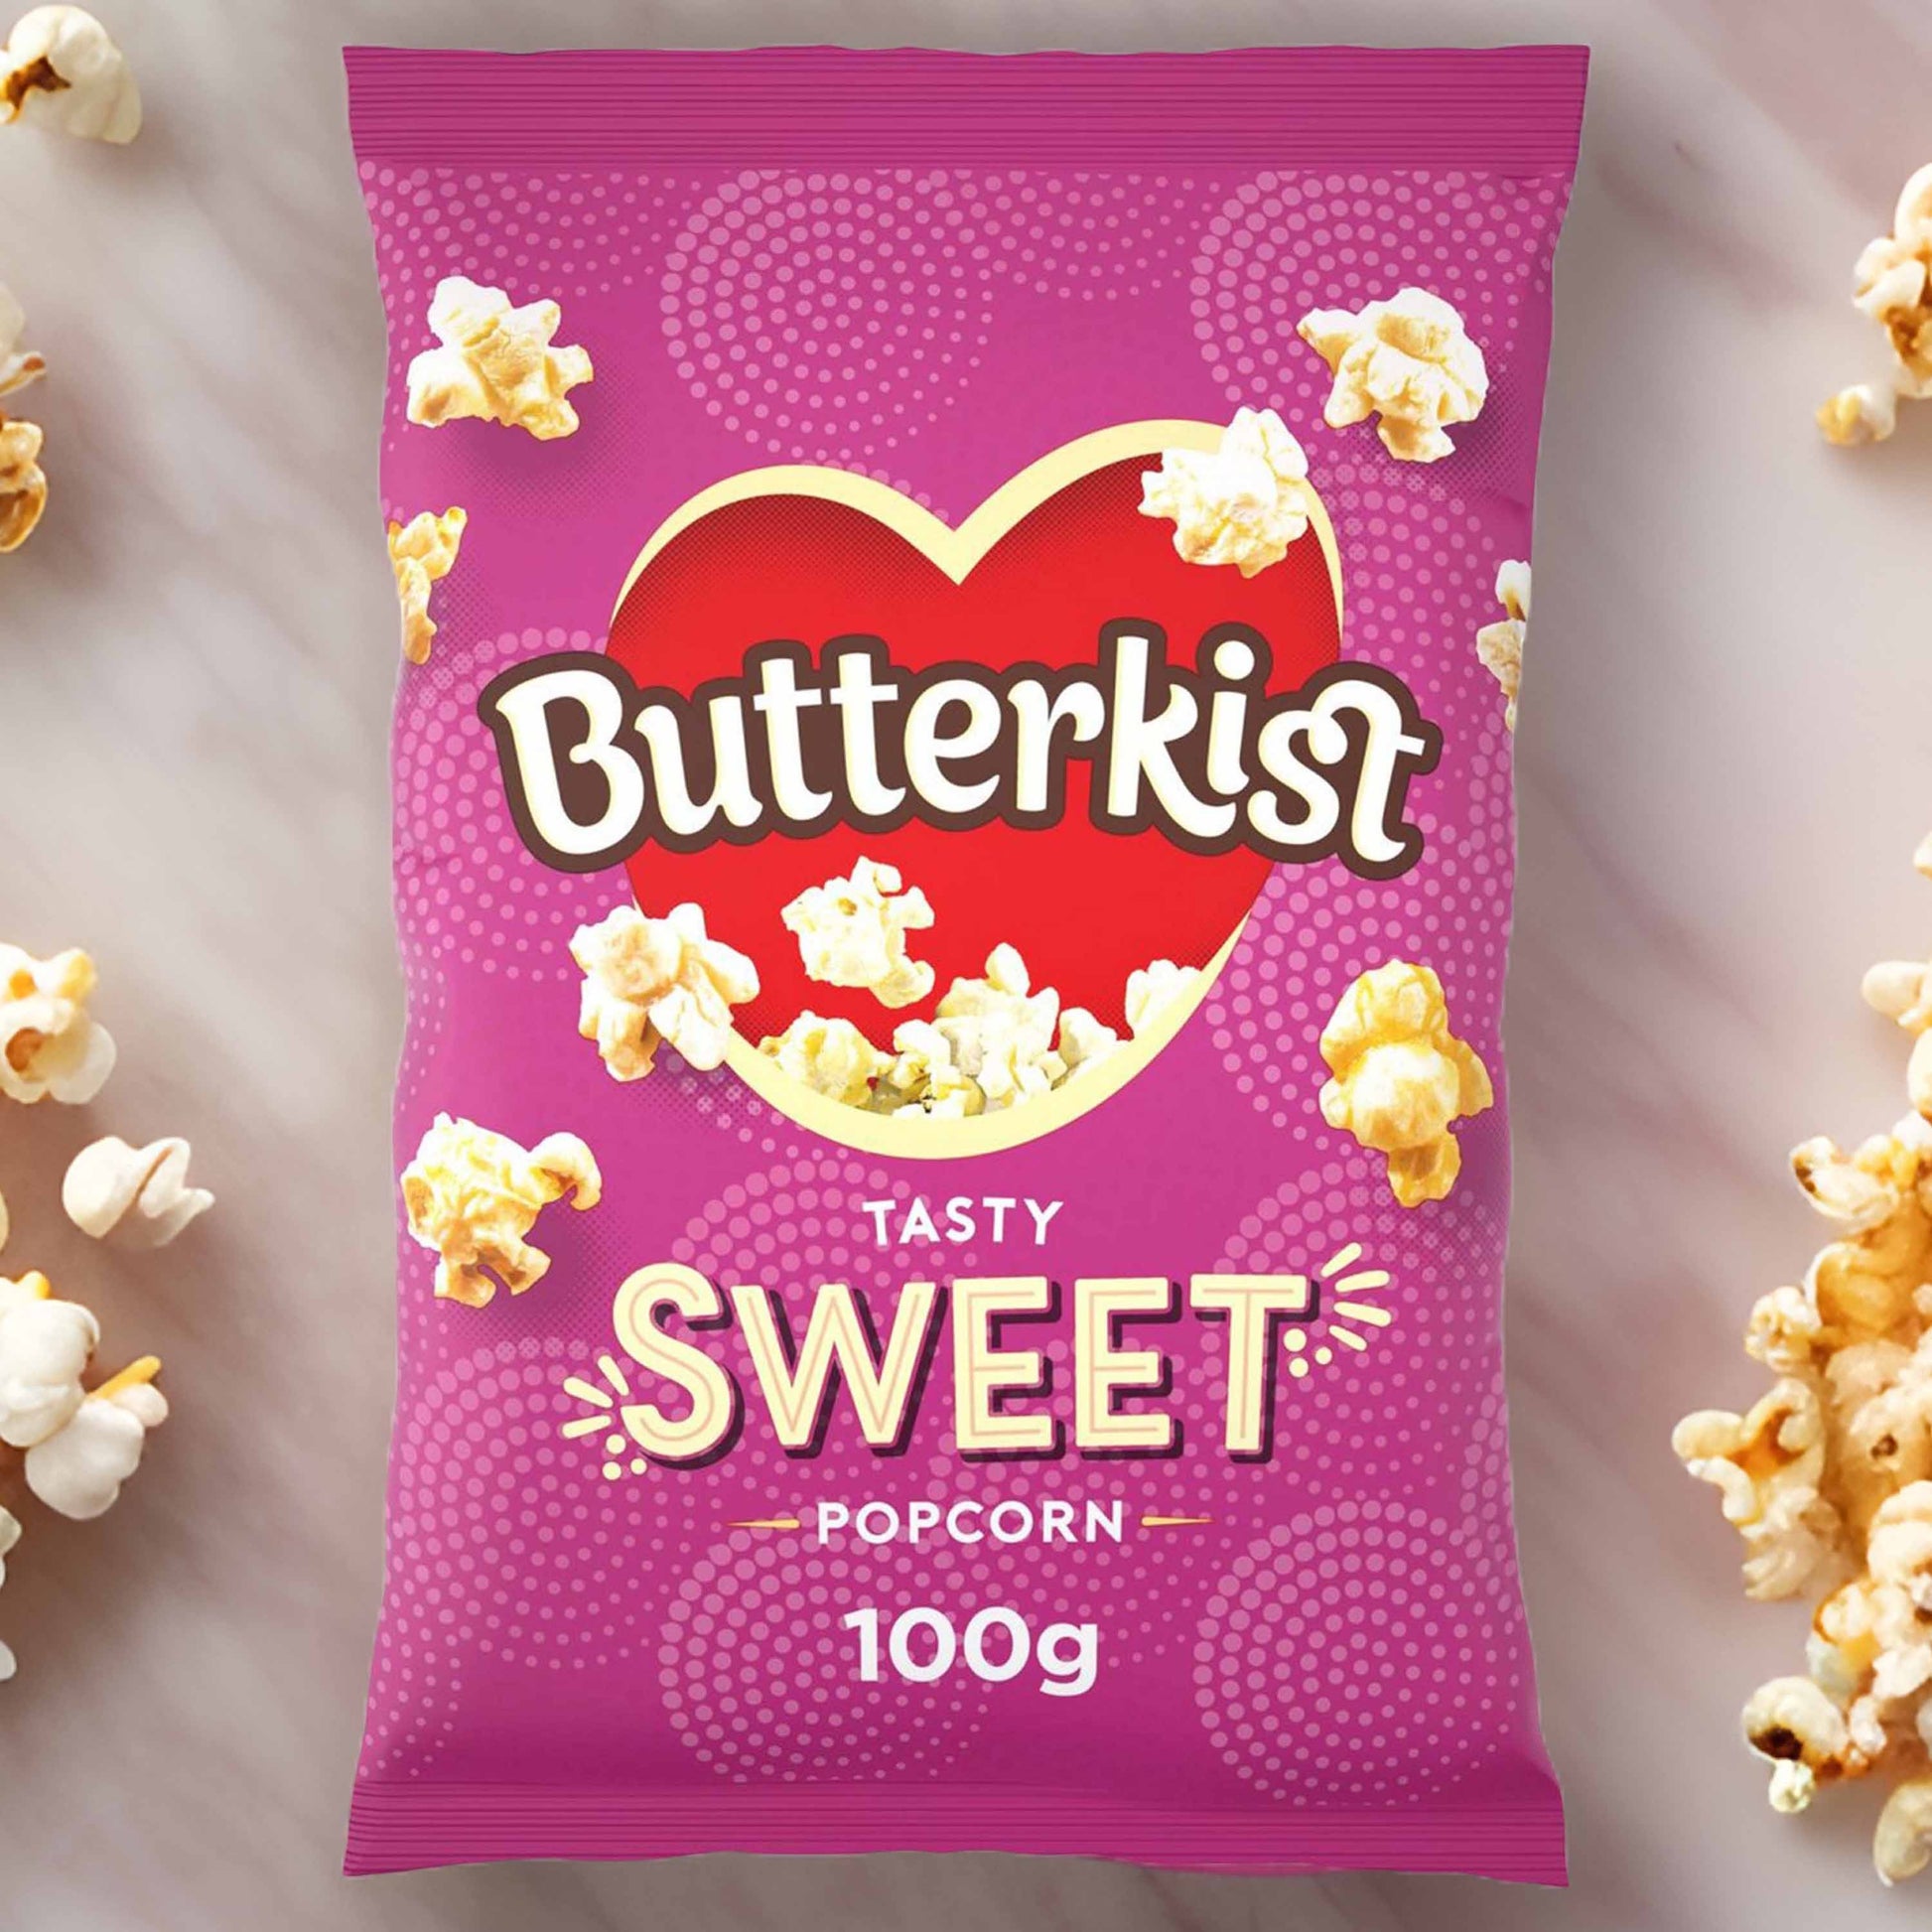 Butterkist Cinema Sweet Popcorn - 100g - British Snacks